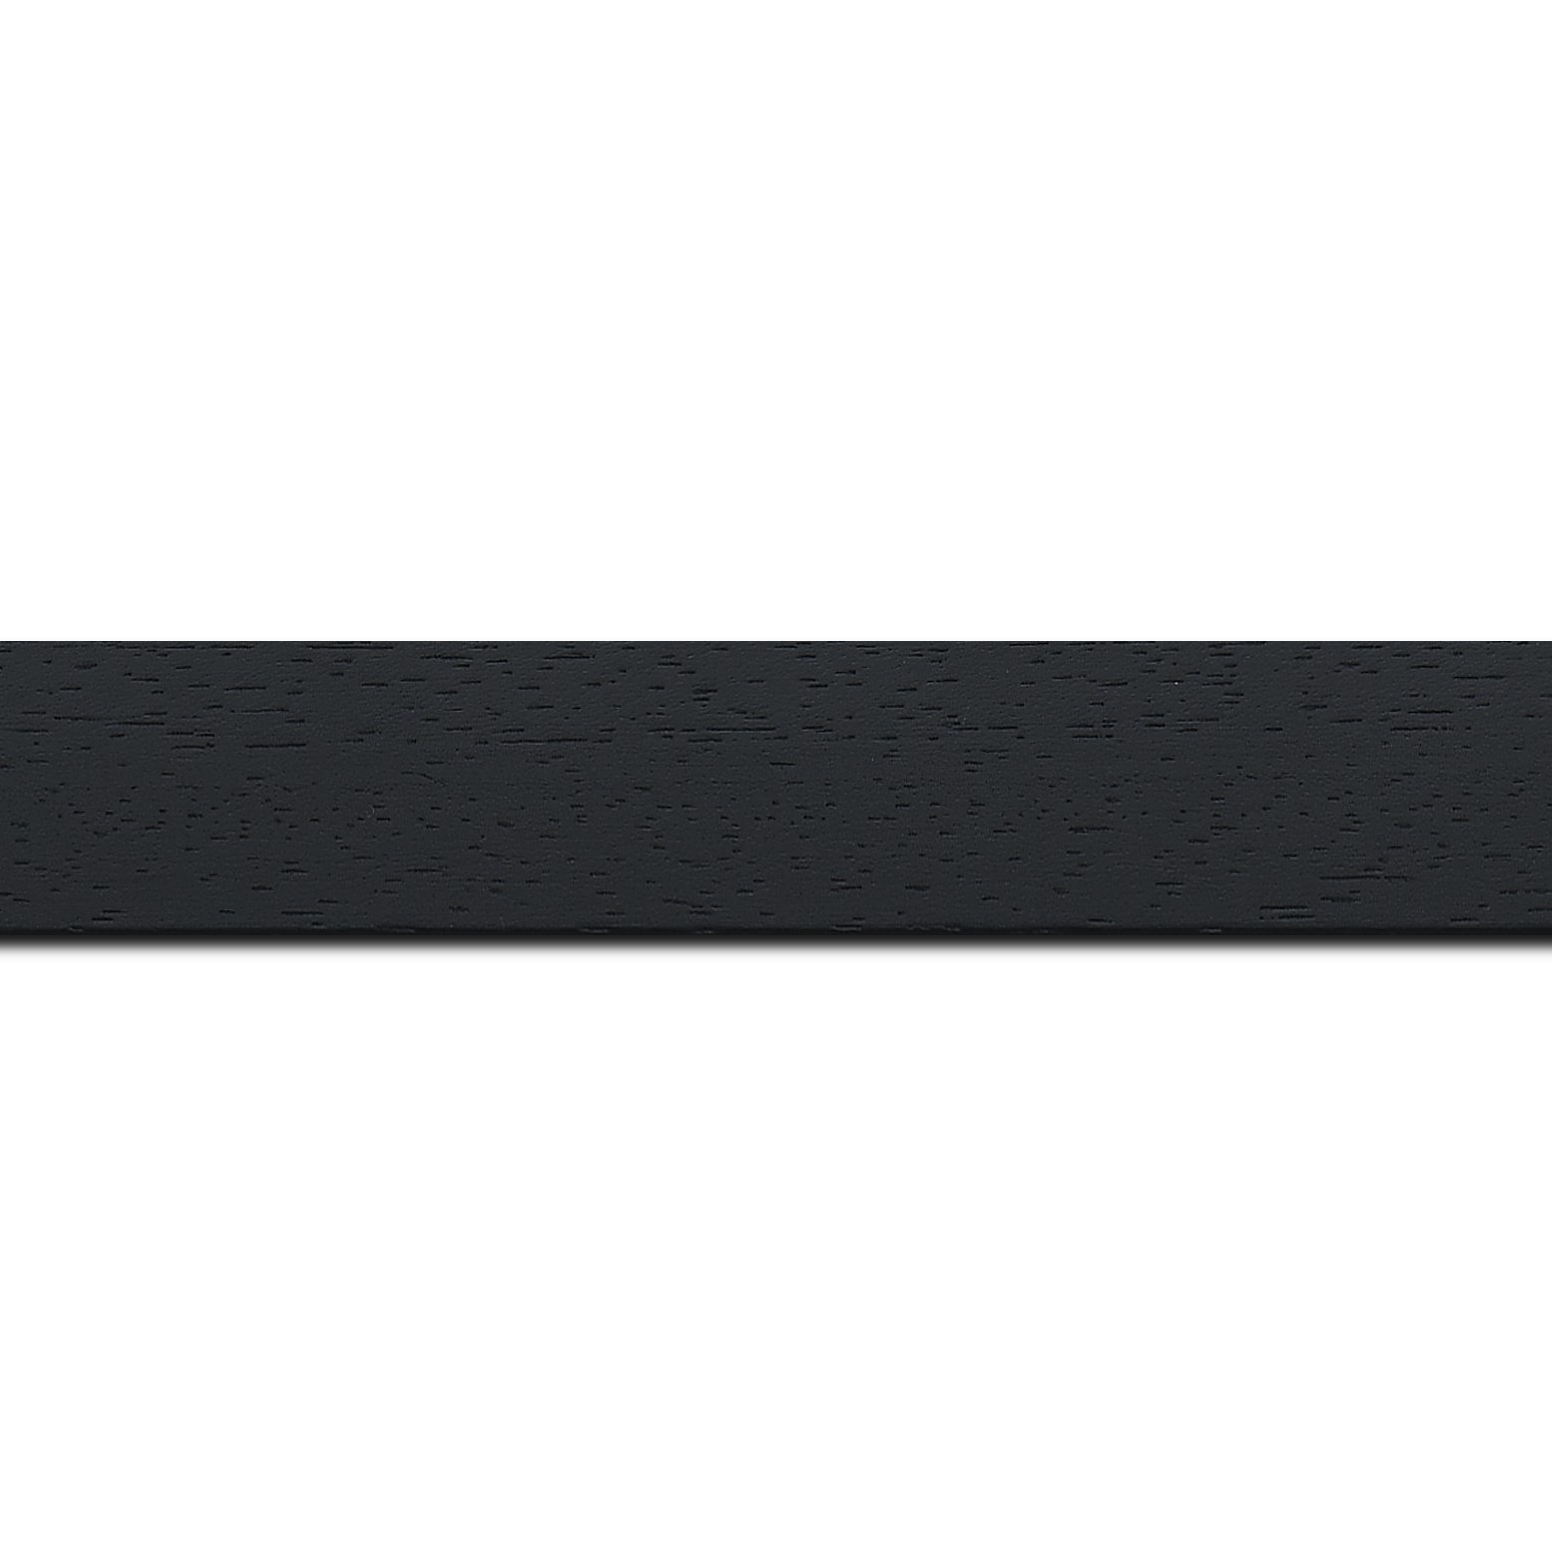 Pack par 12m, bois profil plat largeur 3cm couleur noir satiné (longueur baguette pouvant varier entre 2.40m et 3m selon arrivage des bois)